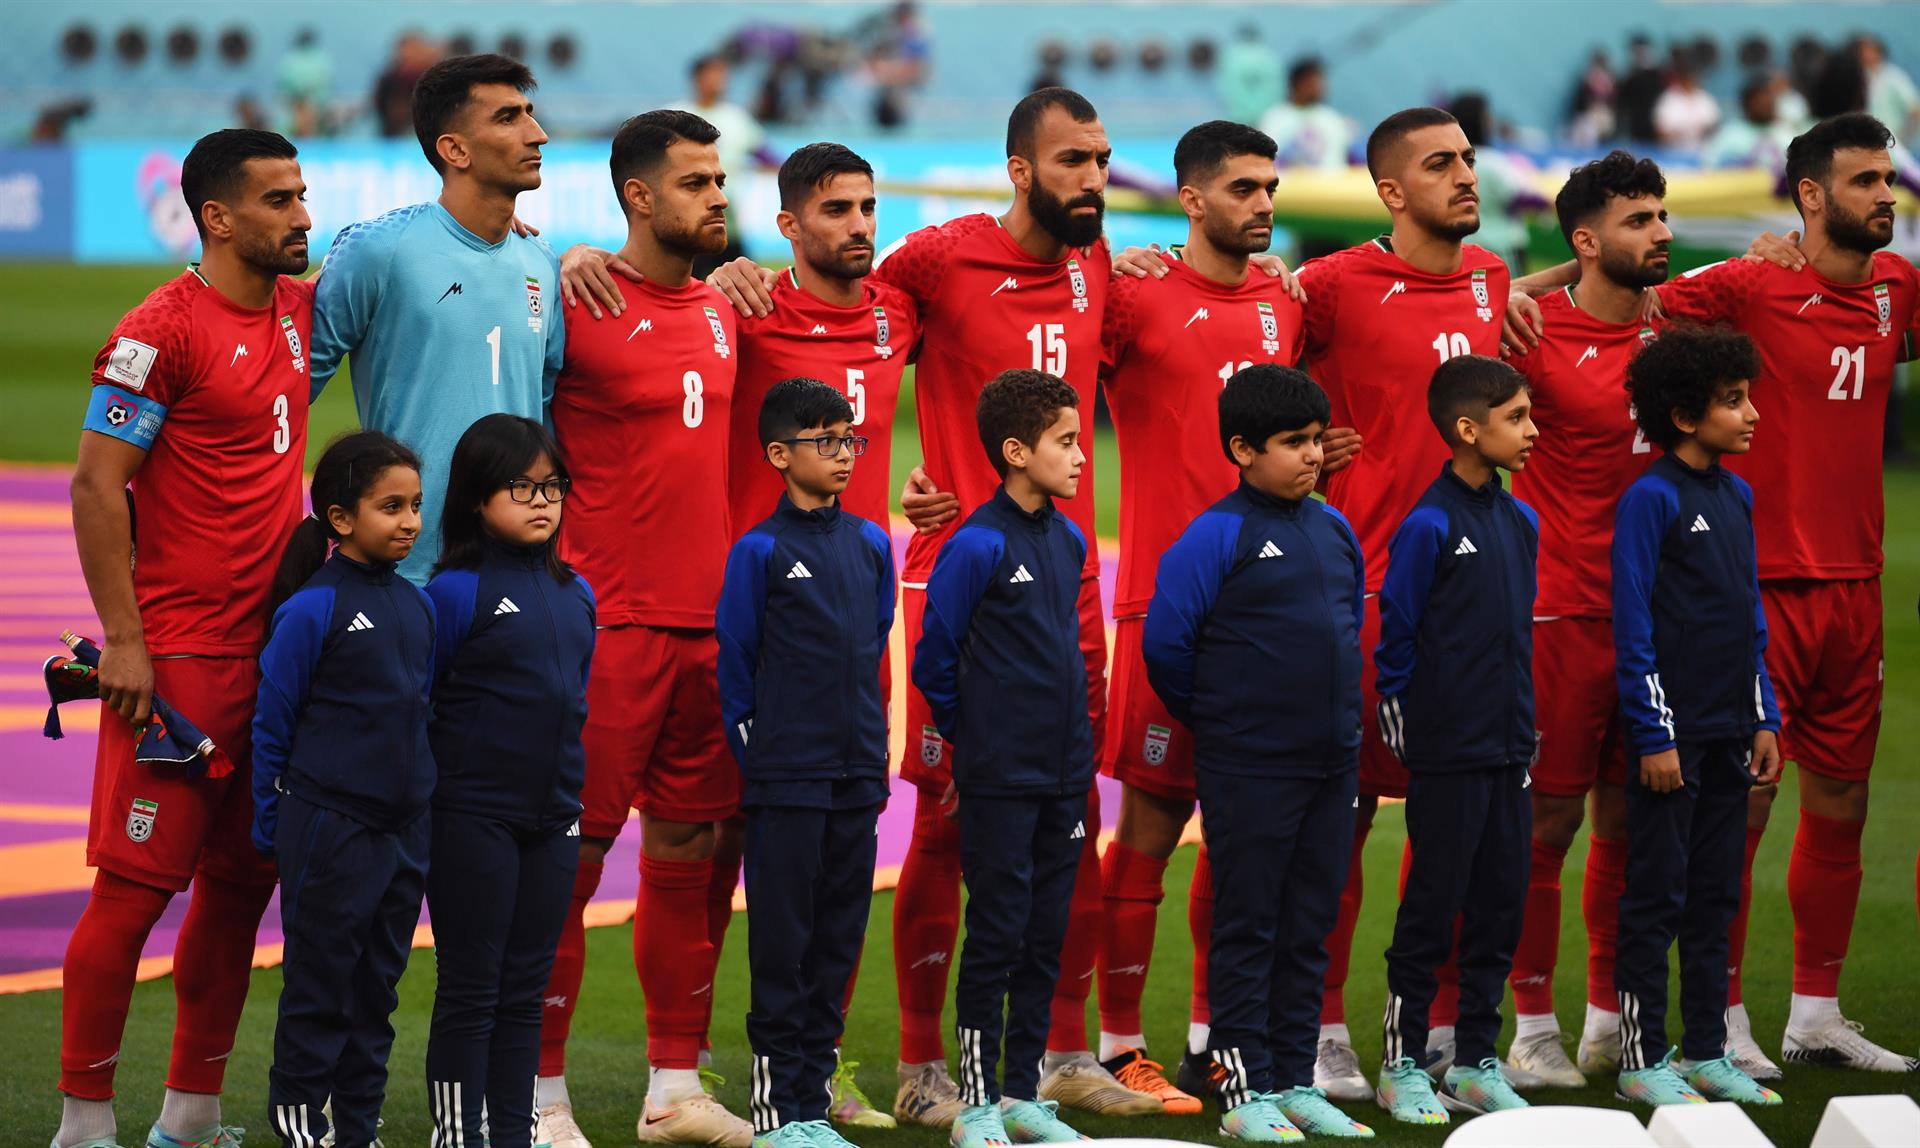 Los futbolistas de la selección de Irán no cantaron el himno de su país en señal de protesta por la situación de represión que se vive en el país y el reciente asesinato de Mahsa Amini. Foto: EFE